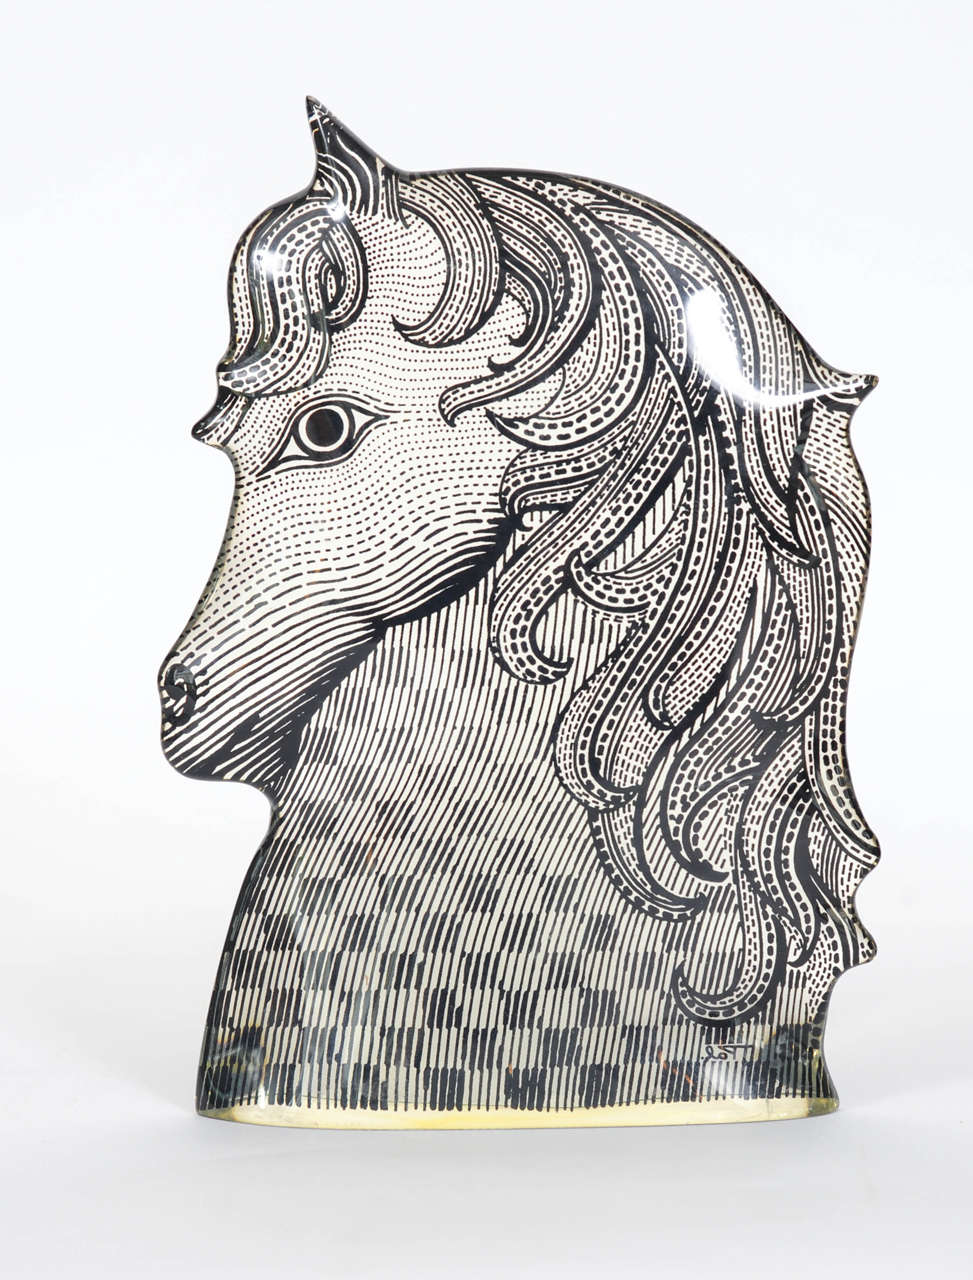 Brazilian Lucite Unicorn Designed by Abraham Palatnik